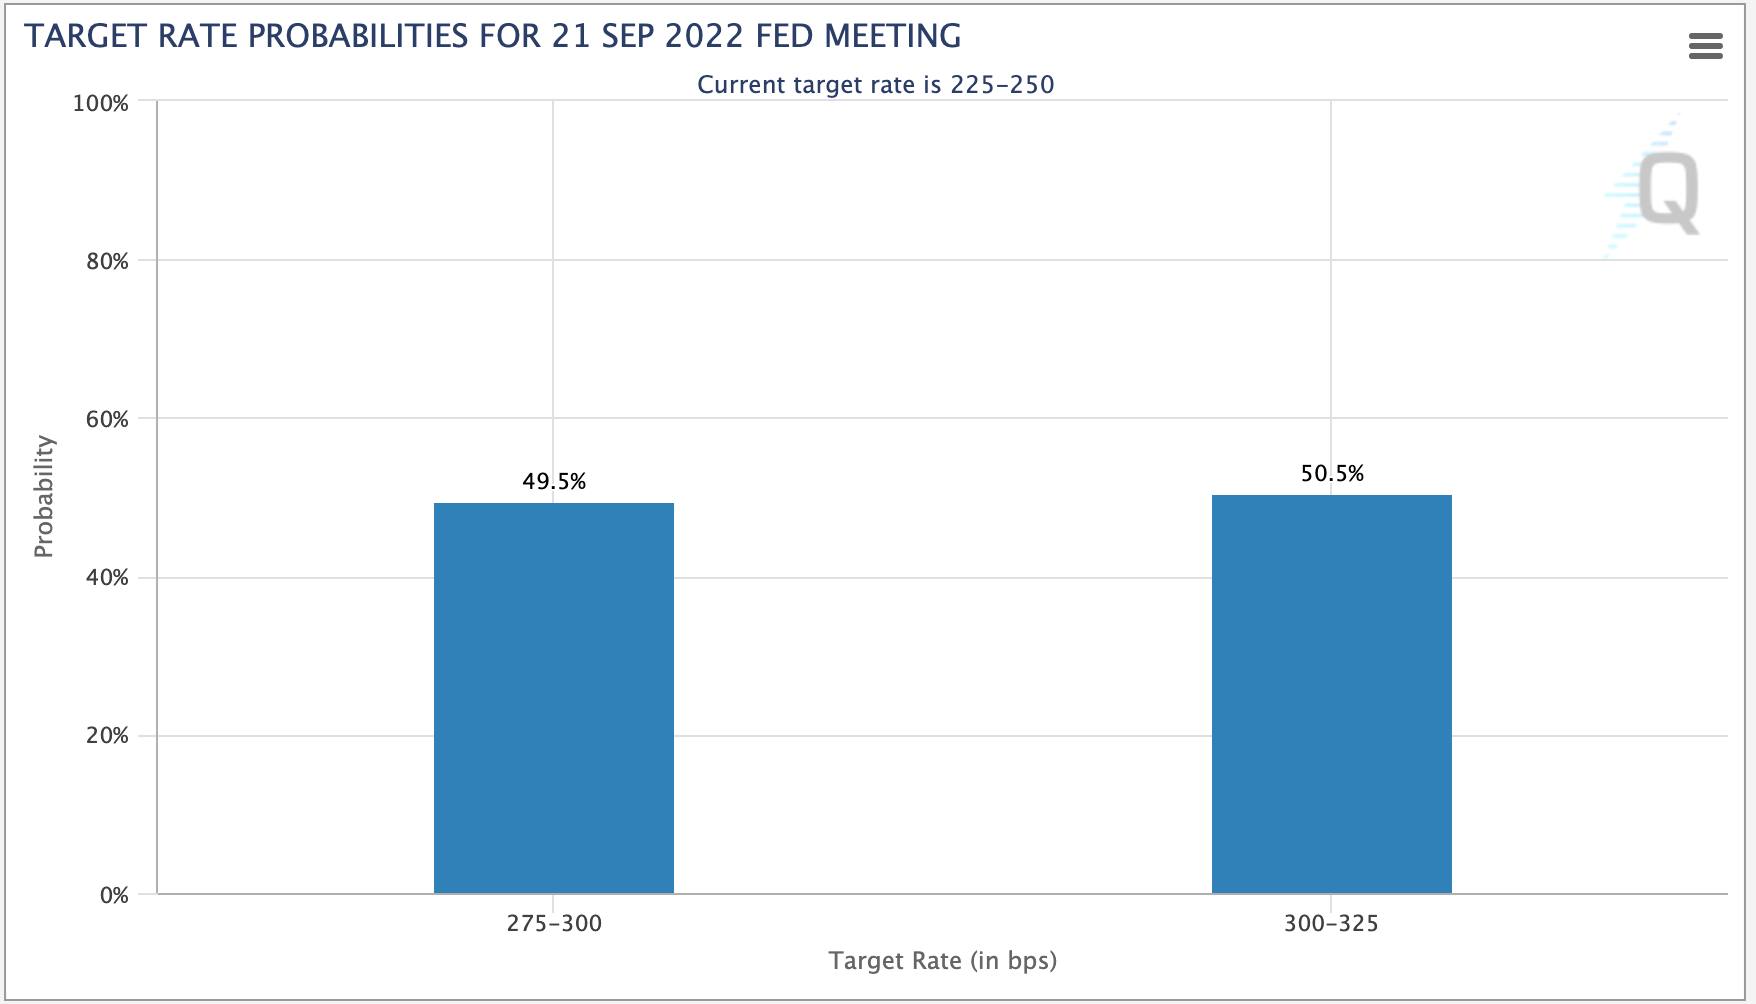 [Đánh giá trước] Biên bản họp FOMC tháng 7: Dữ liệu “đã cũ” nhưng vẫn tiềm ẩn rủi ro!